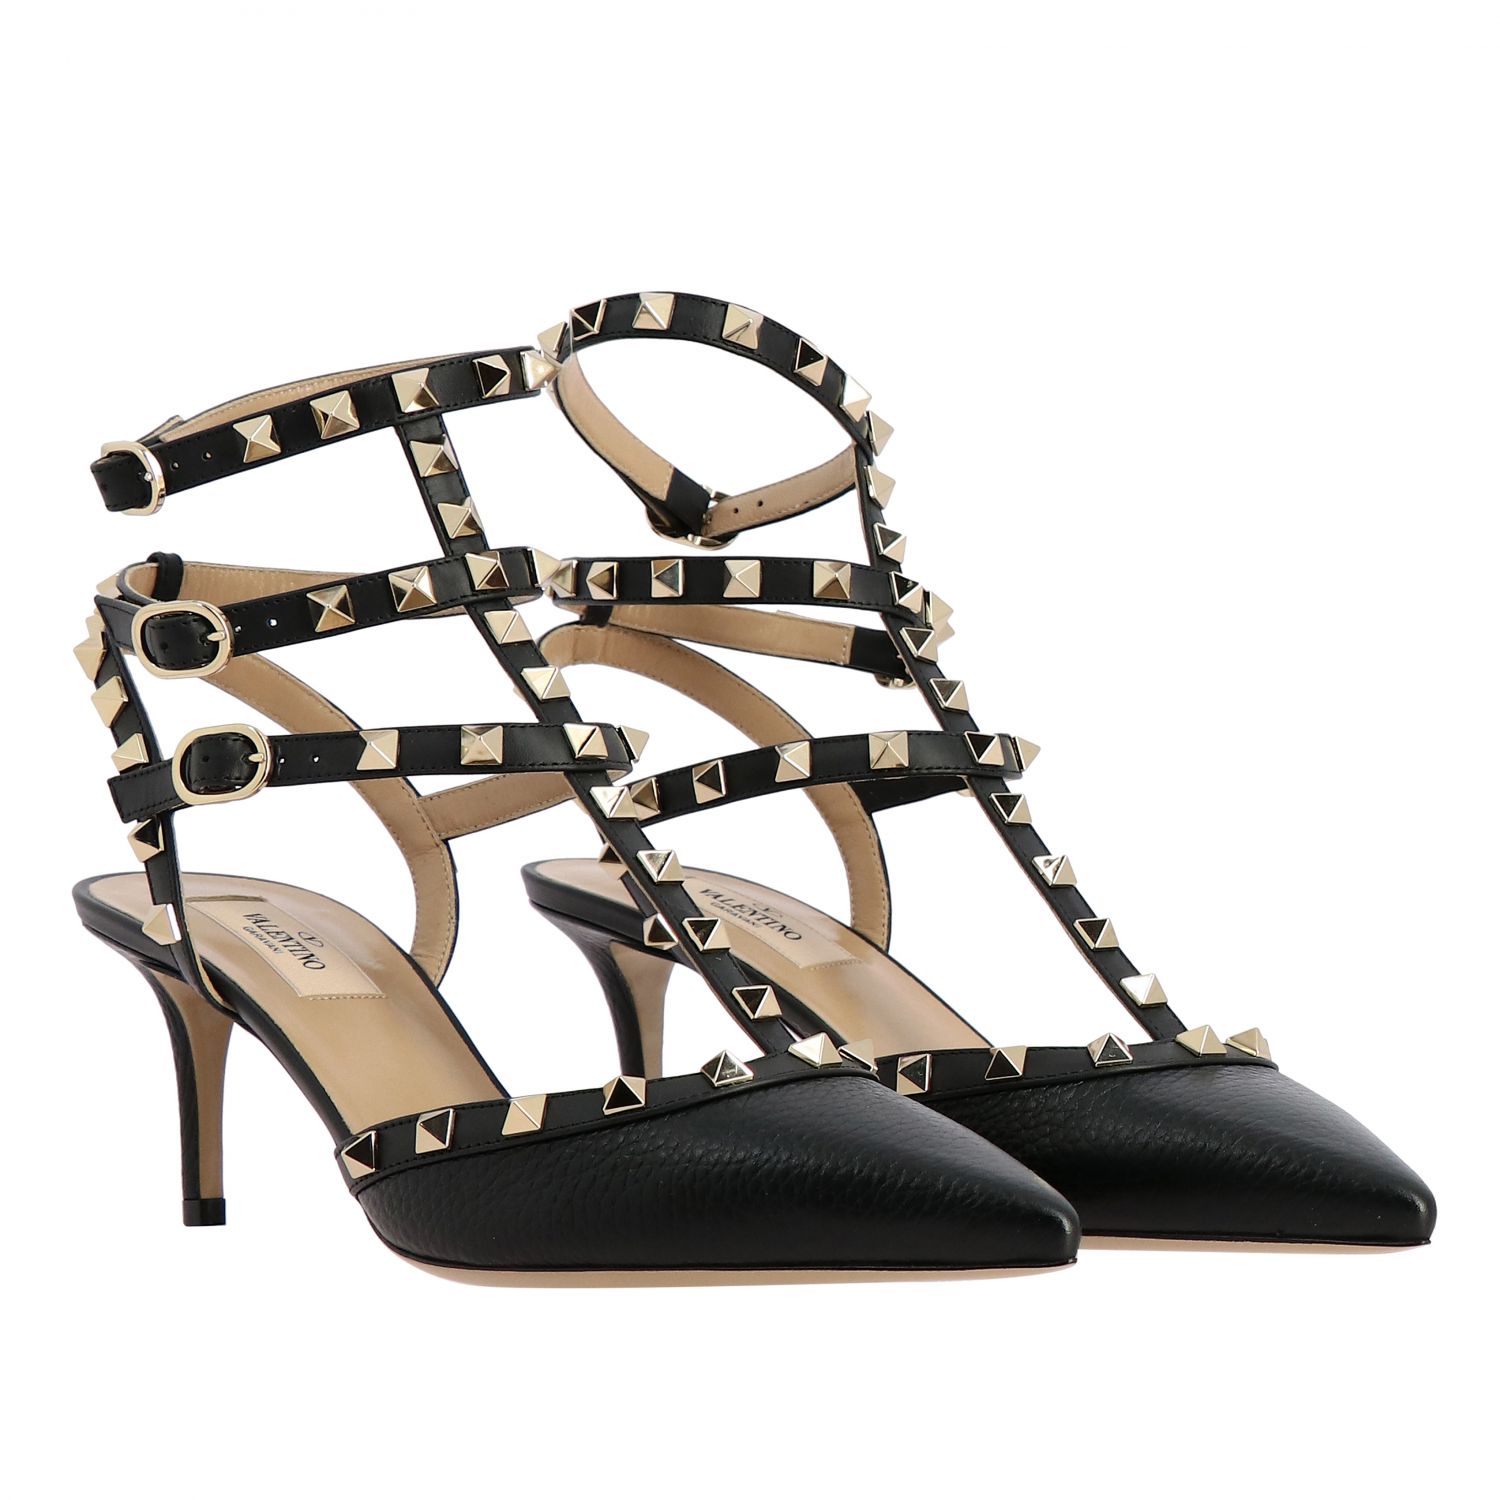 Valentino Garavani Outlet: Heeled sandals women | Court Shoes Valentino ...